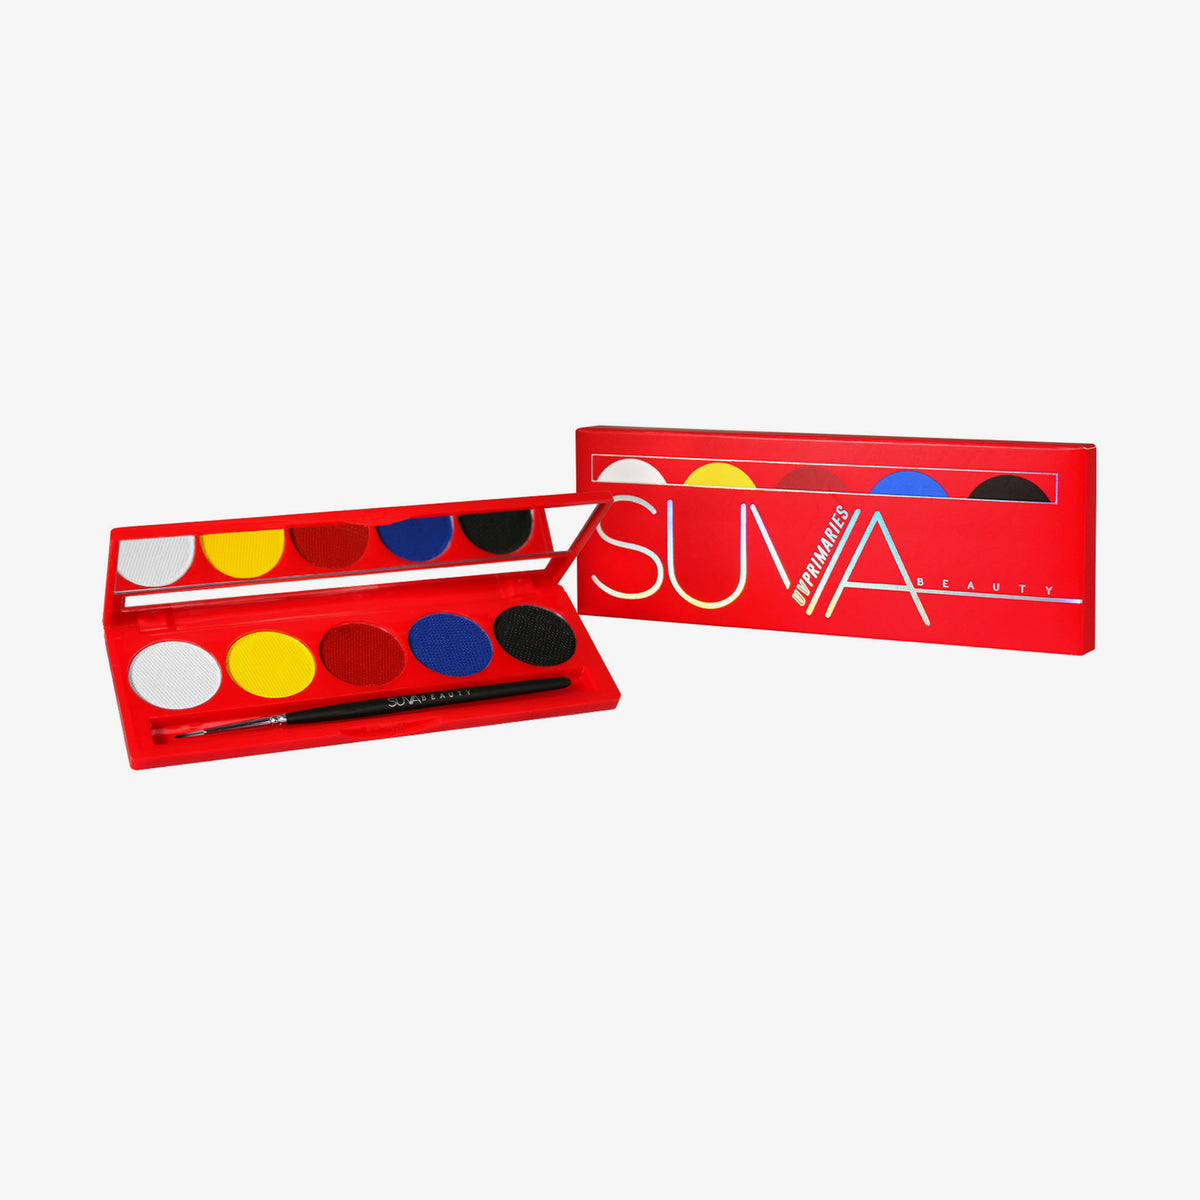 SUVA Beauty | UV Primaries